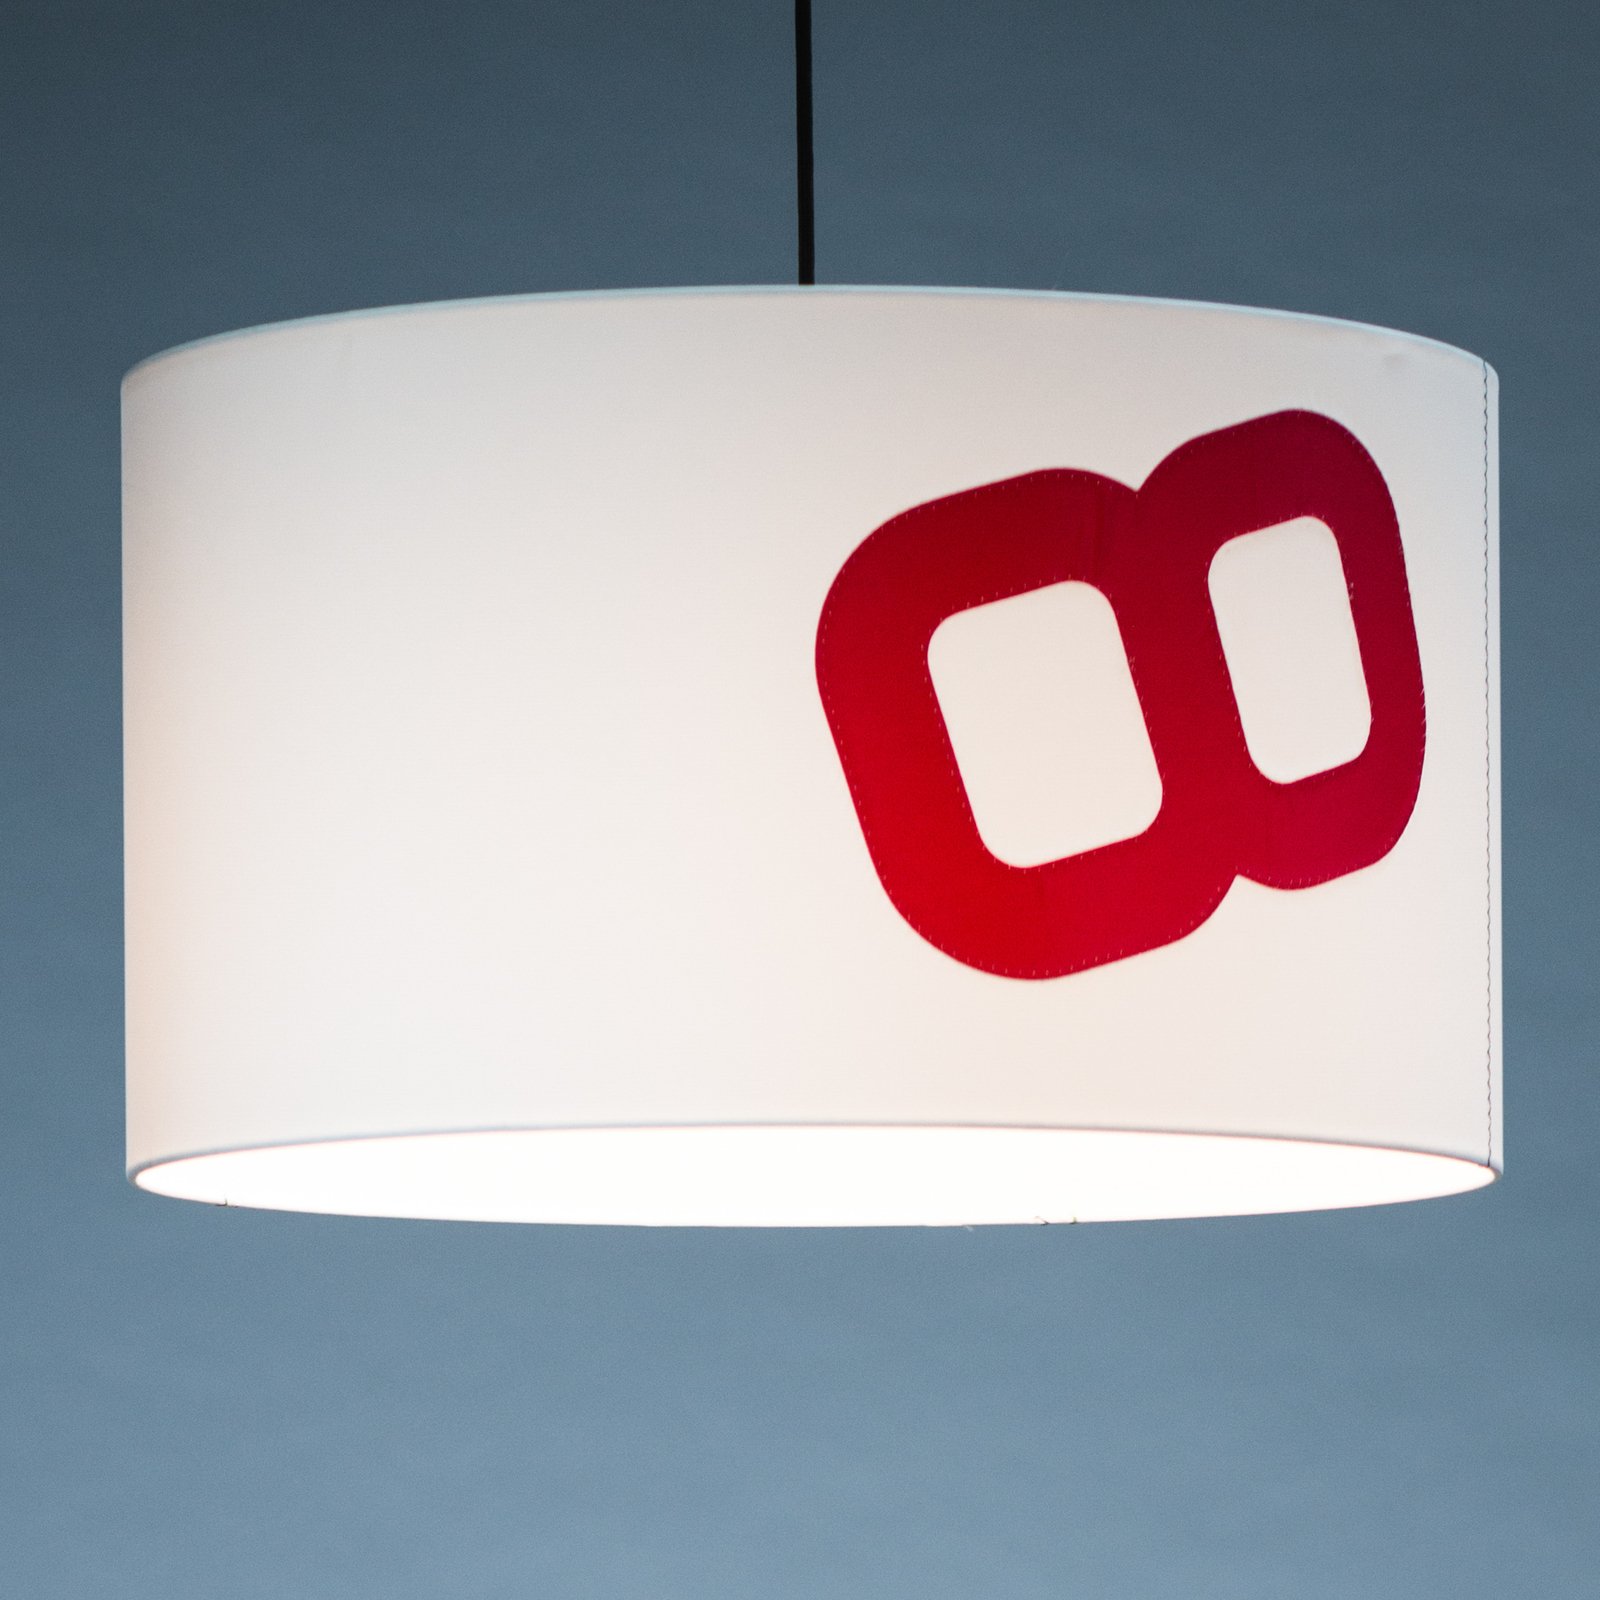 Hjemstavn hængelampe af sejl, 60cm, hvid/rød